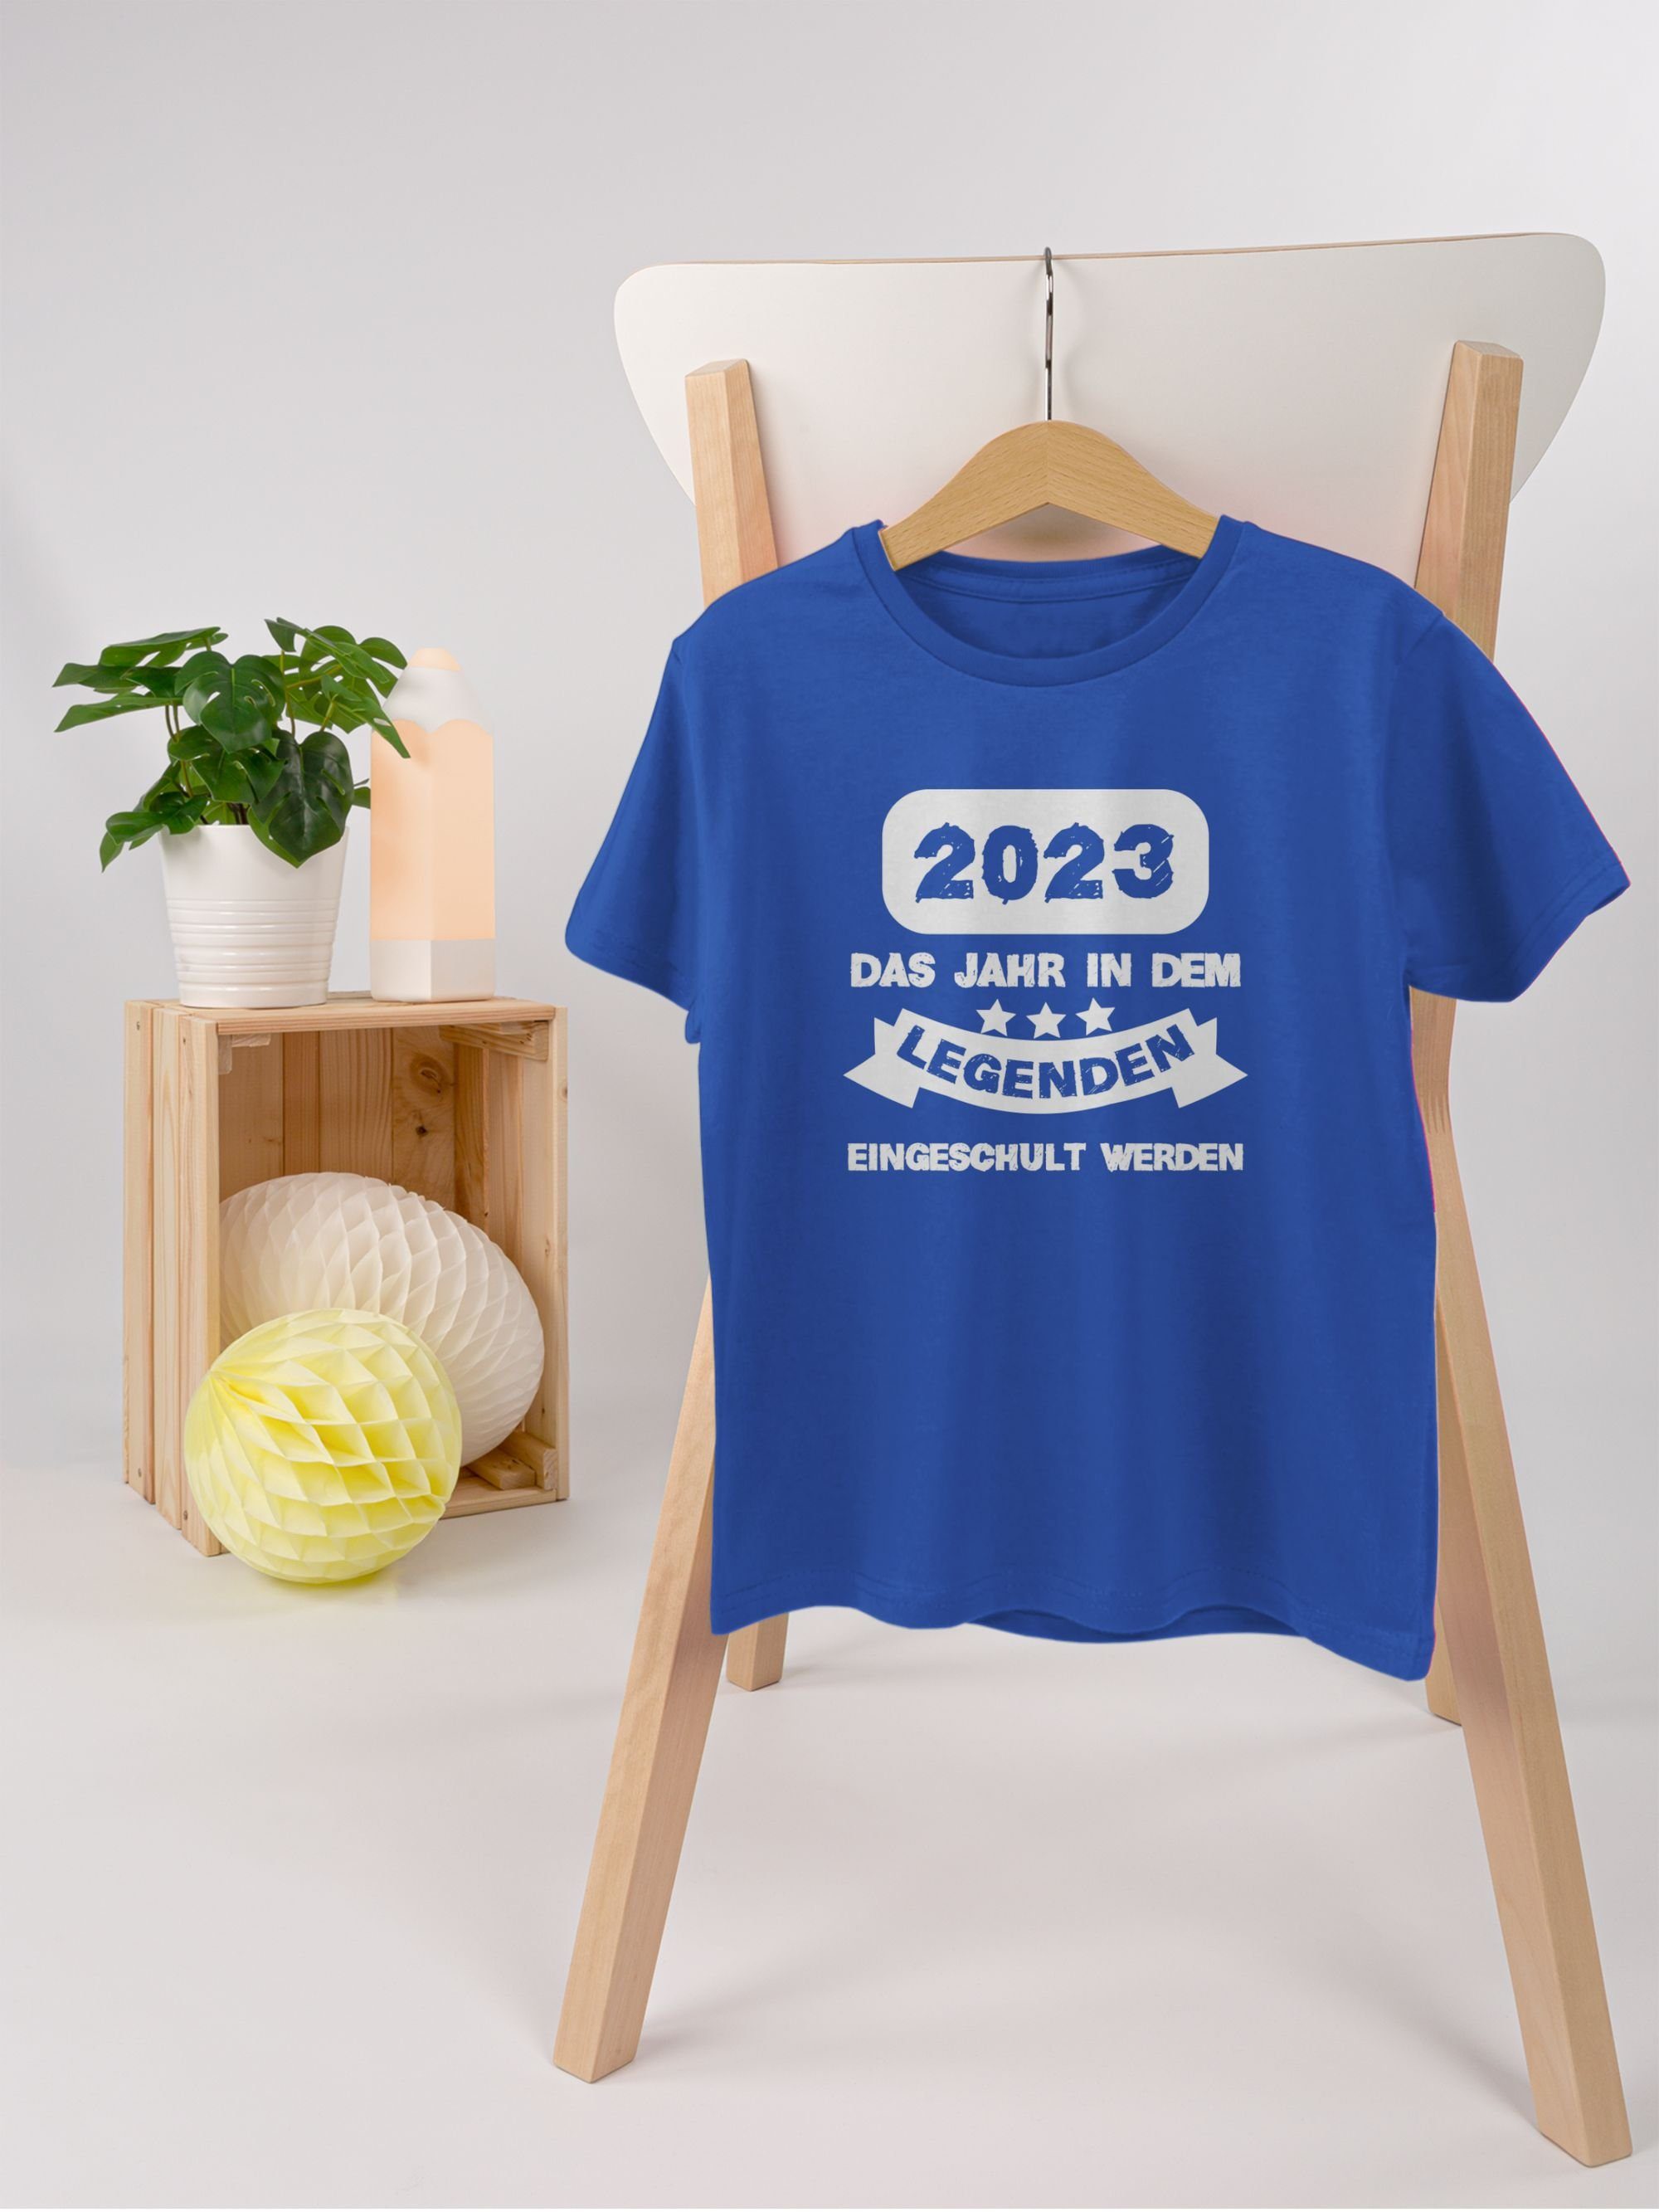 Geschenke weiß 02 2023 werden Junge T-Shirt Royalblau eingeschult Jahr dem Schulanfang Einschulung in Shirtracer Das Legenden